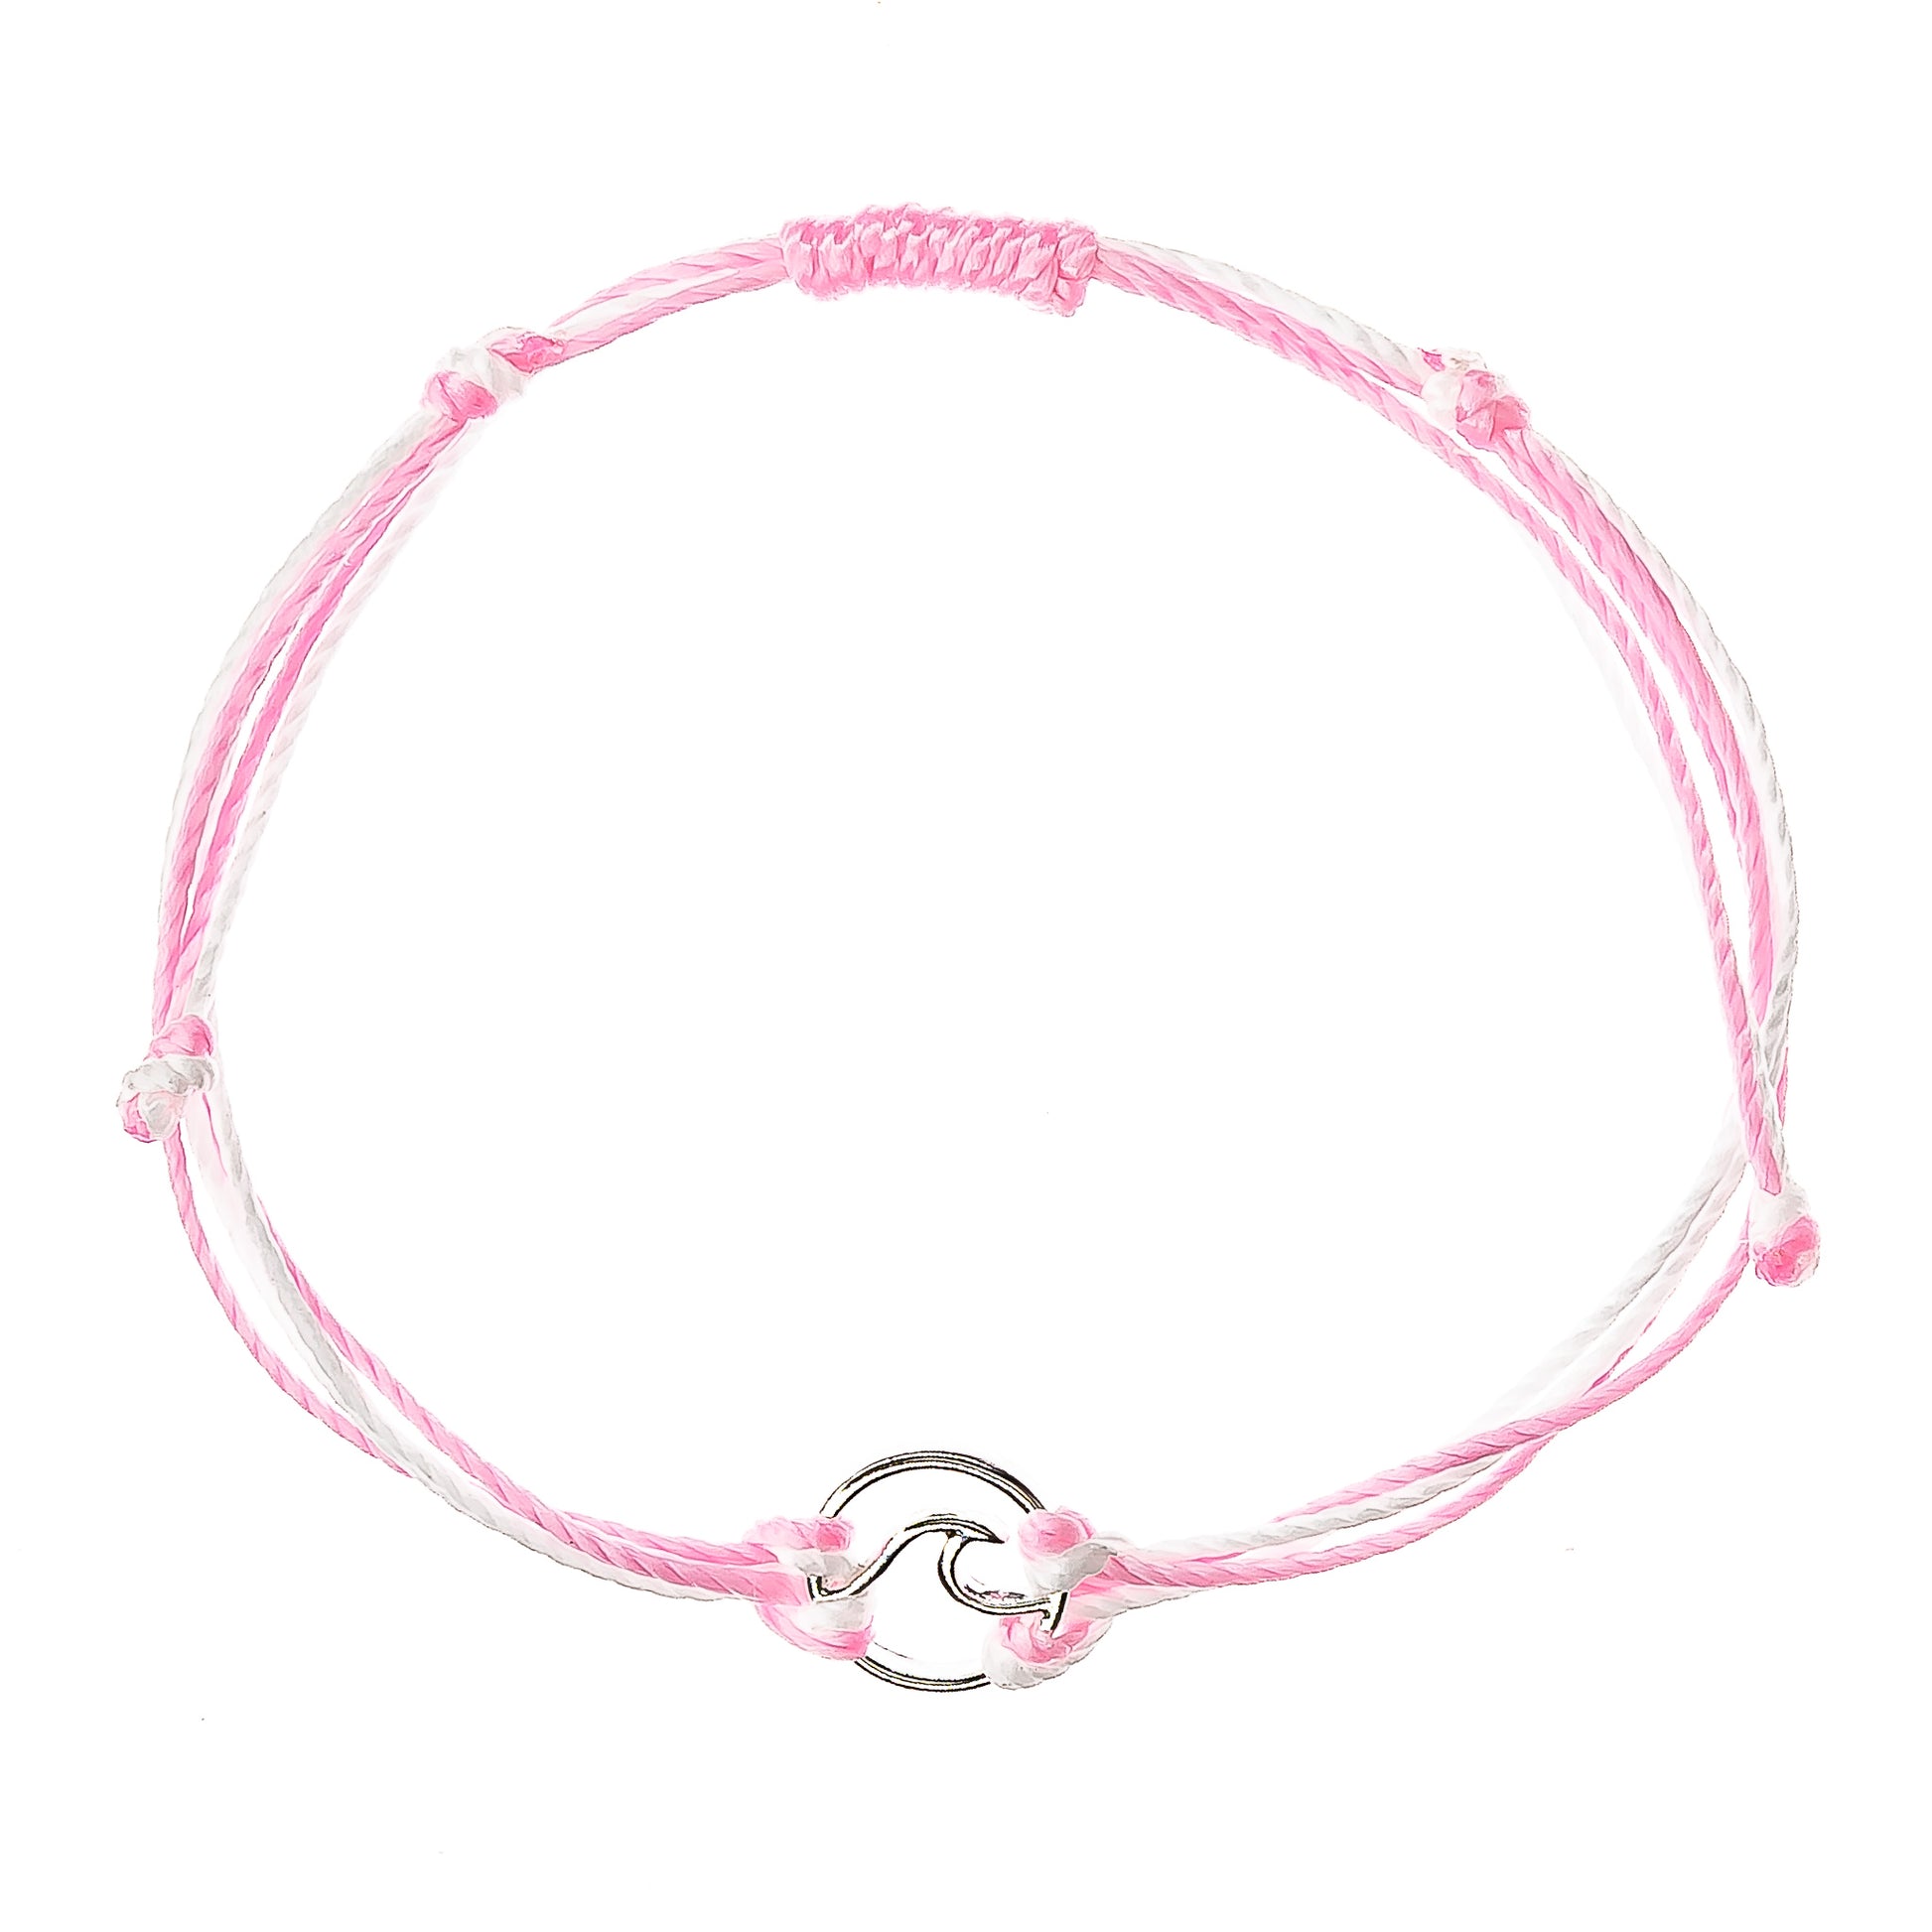 surfer string bracelet, wave charm, pink